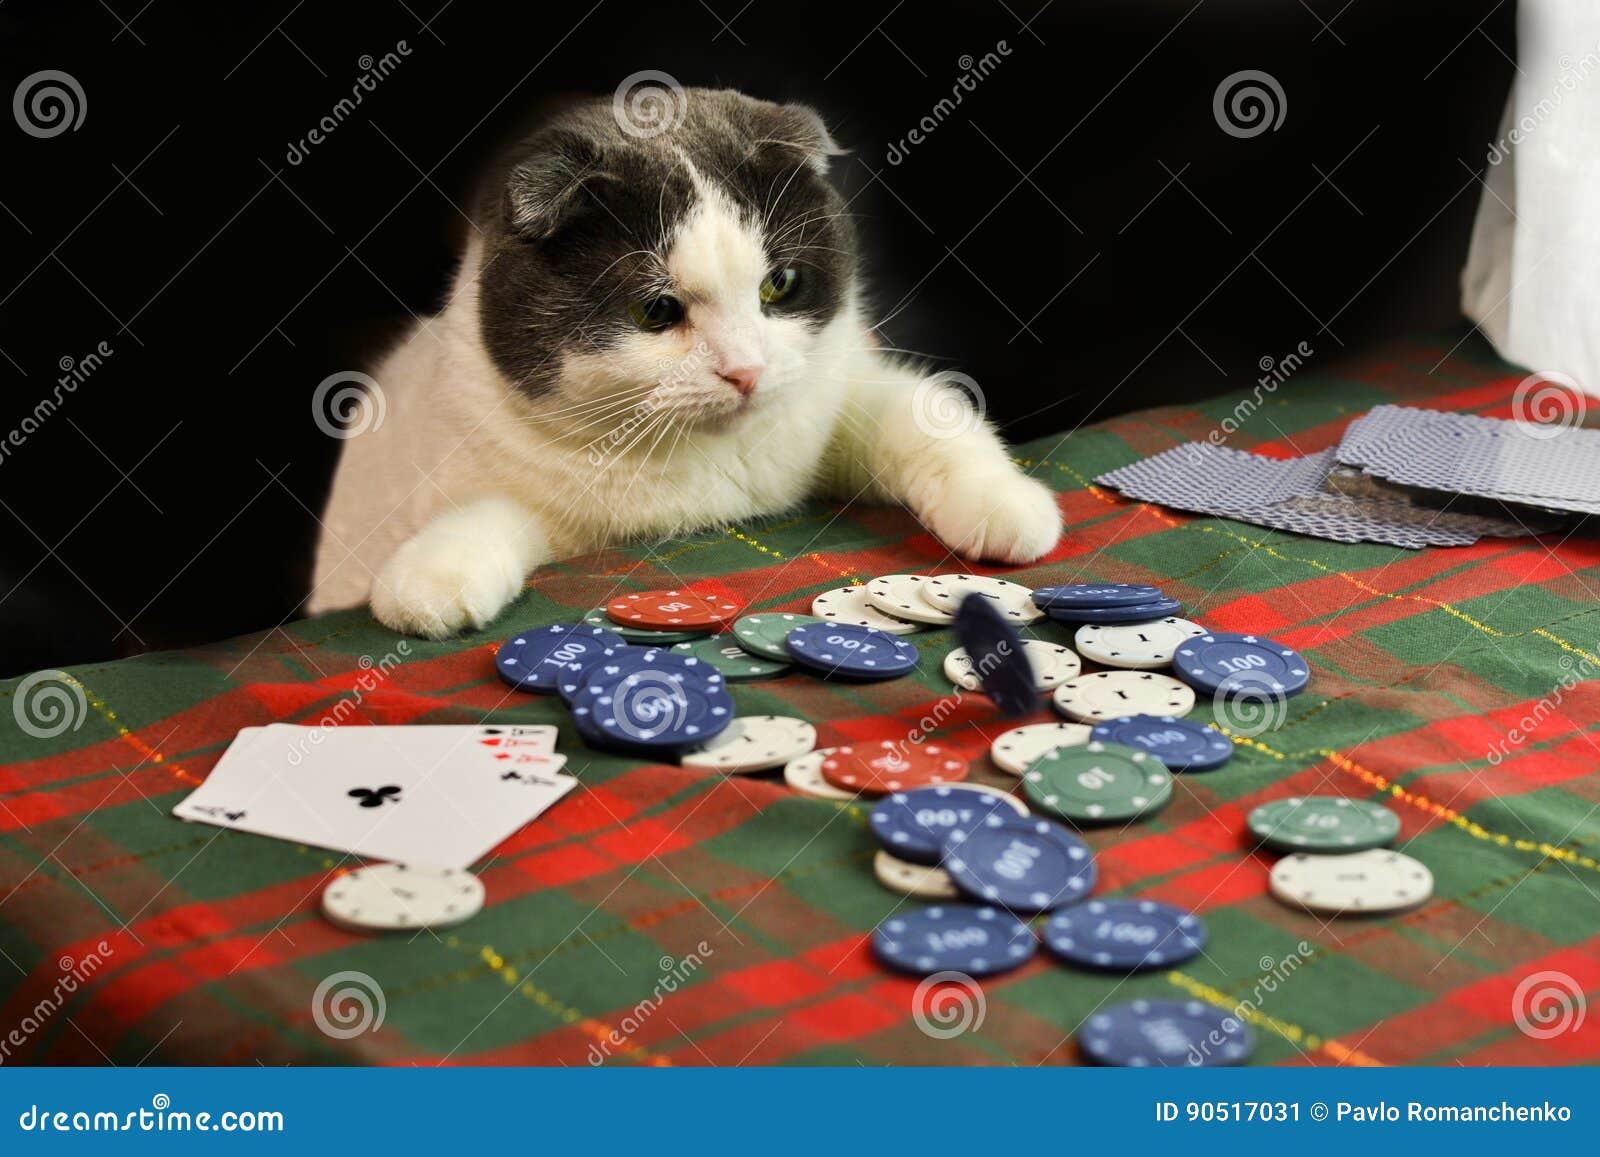 Casino cat official money cat fun. Покерный кот. Коты играющие в Покер. Азартный кот. Коты в казино.